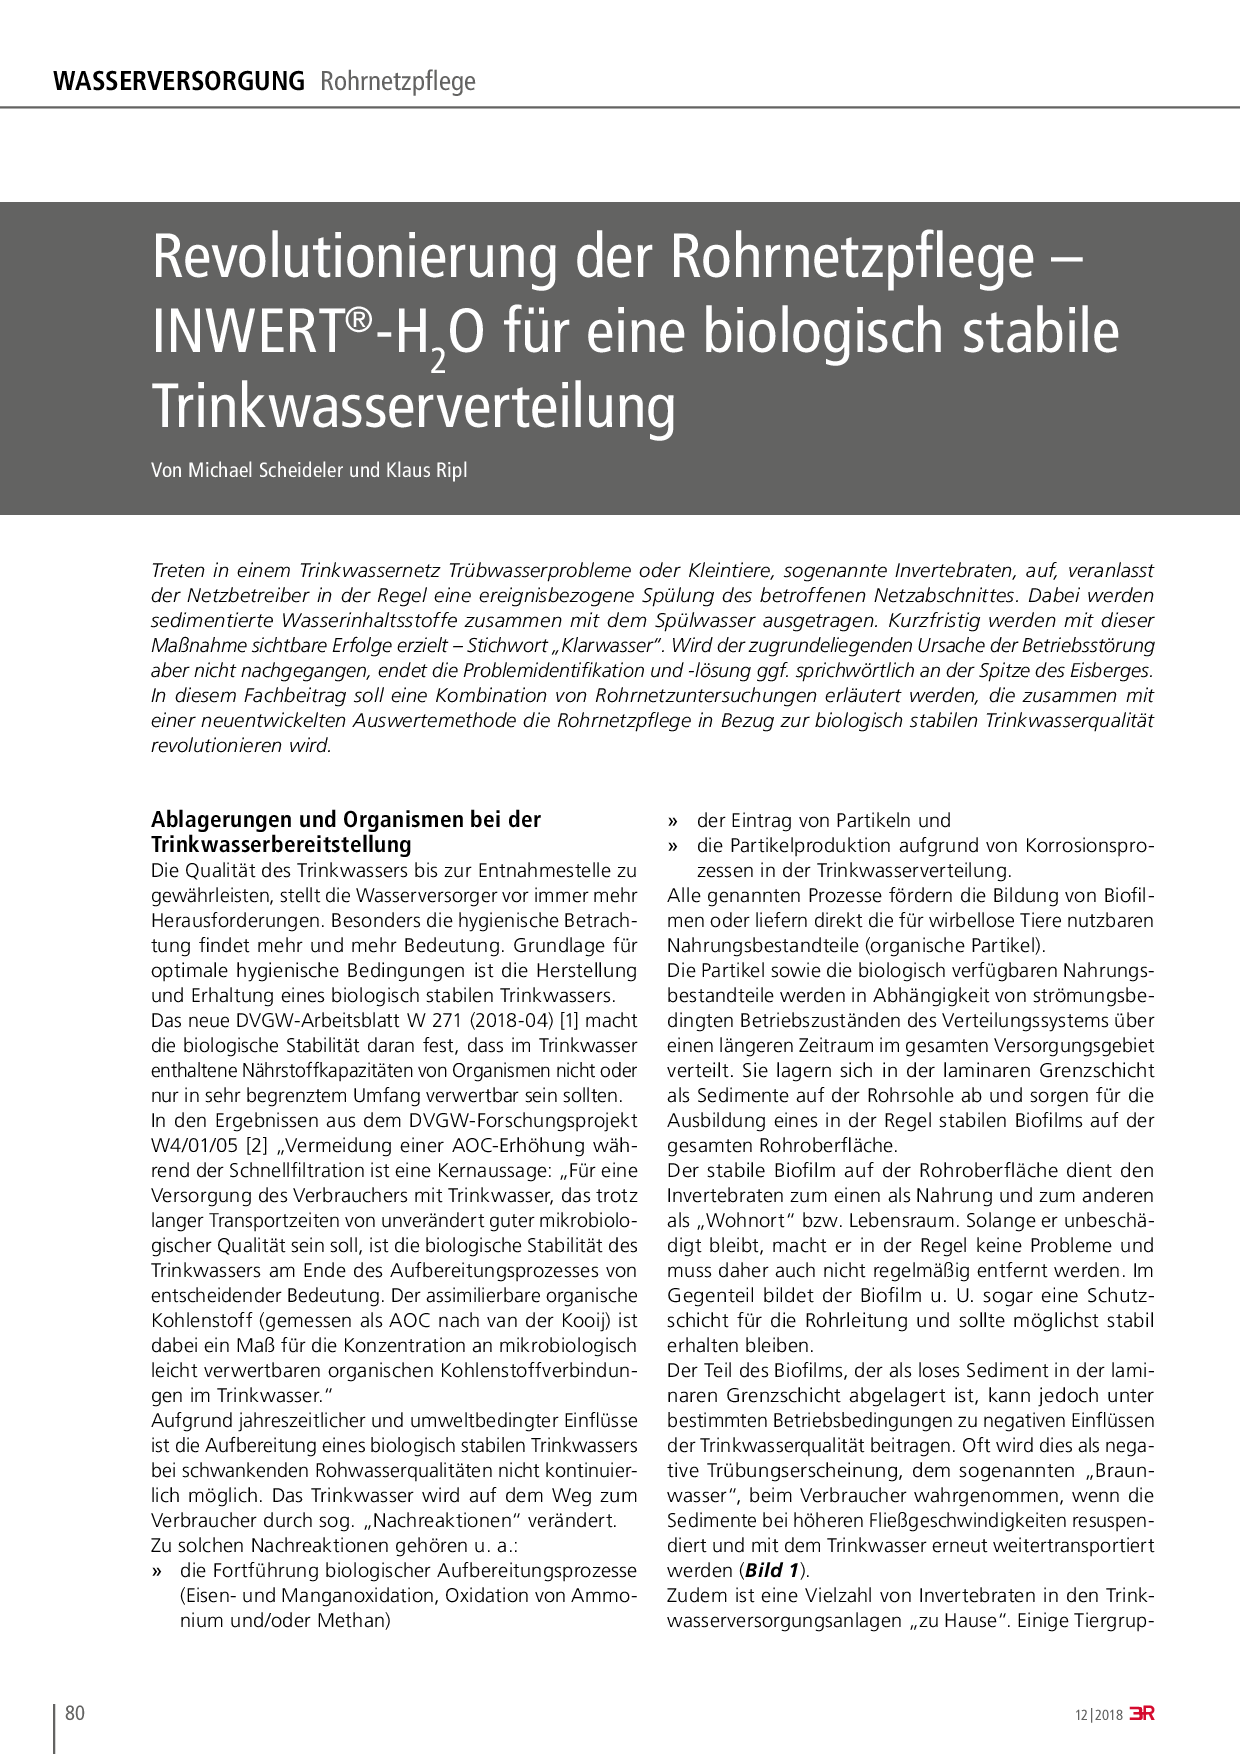 Revolutionierung der Rohrnetzpflege – INWERT®-H2O für eine biologisch stabile Trinkwasserverteilung